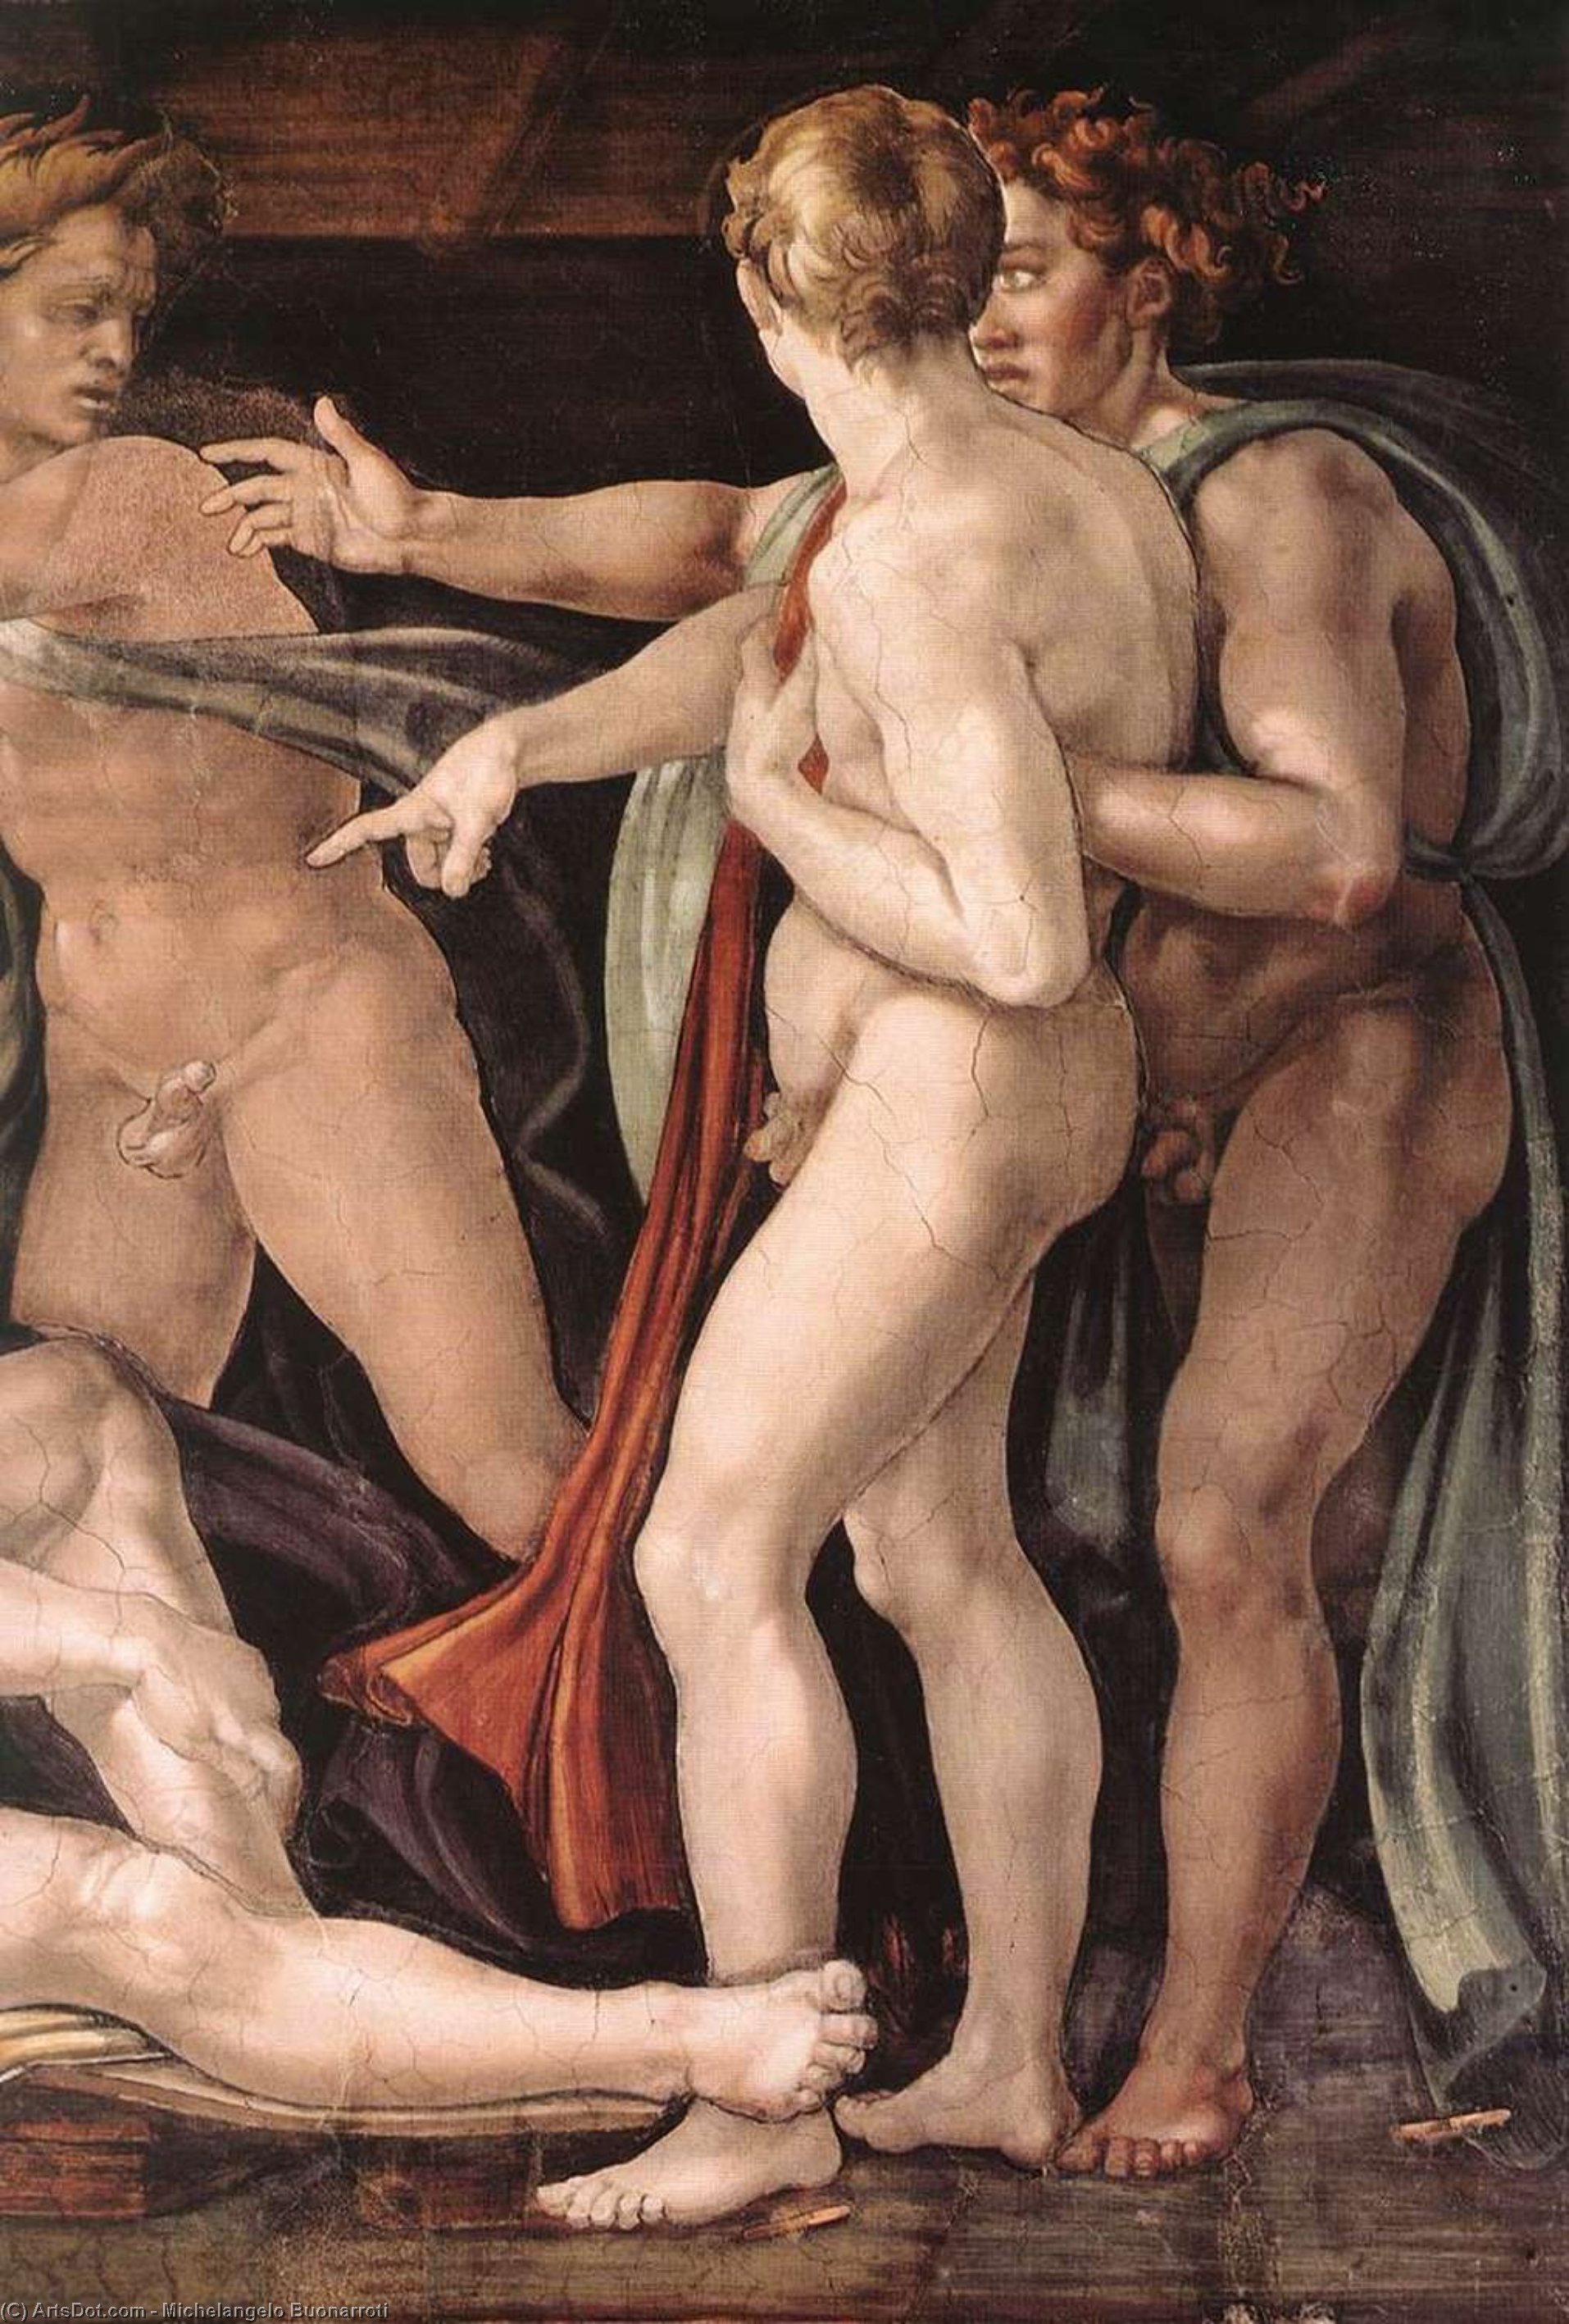 Wikioo.org - Bách khoa toàn thư về mỹ thuật - Vẽ tranh, Tác phẩm nghệ thuật Michelangelo Buonarroti - Drunkenness of Noah (detail)